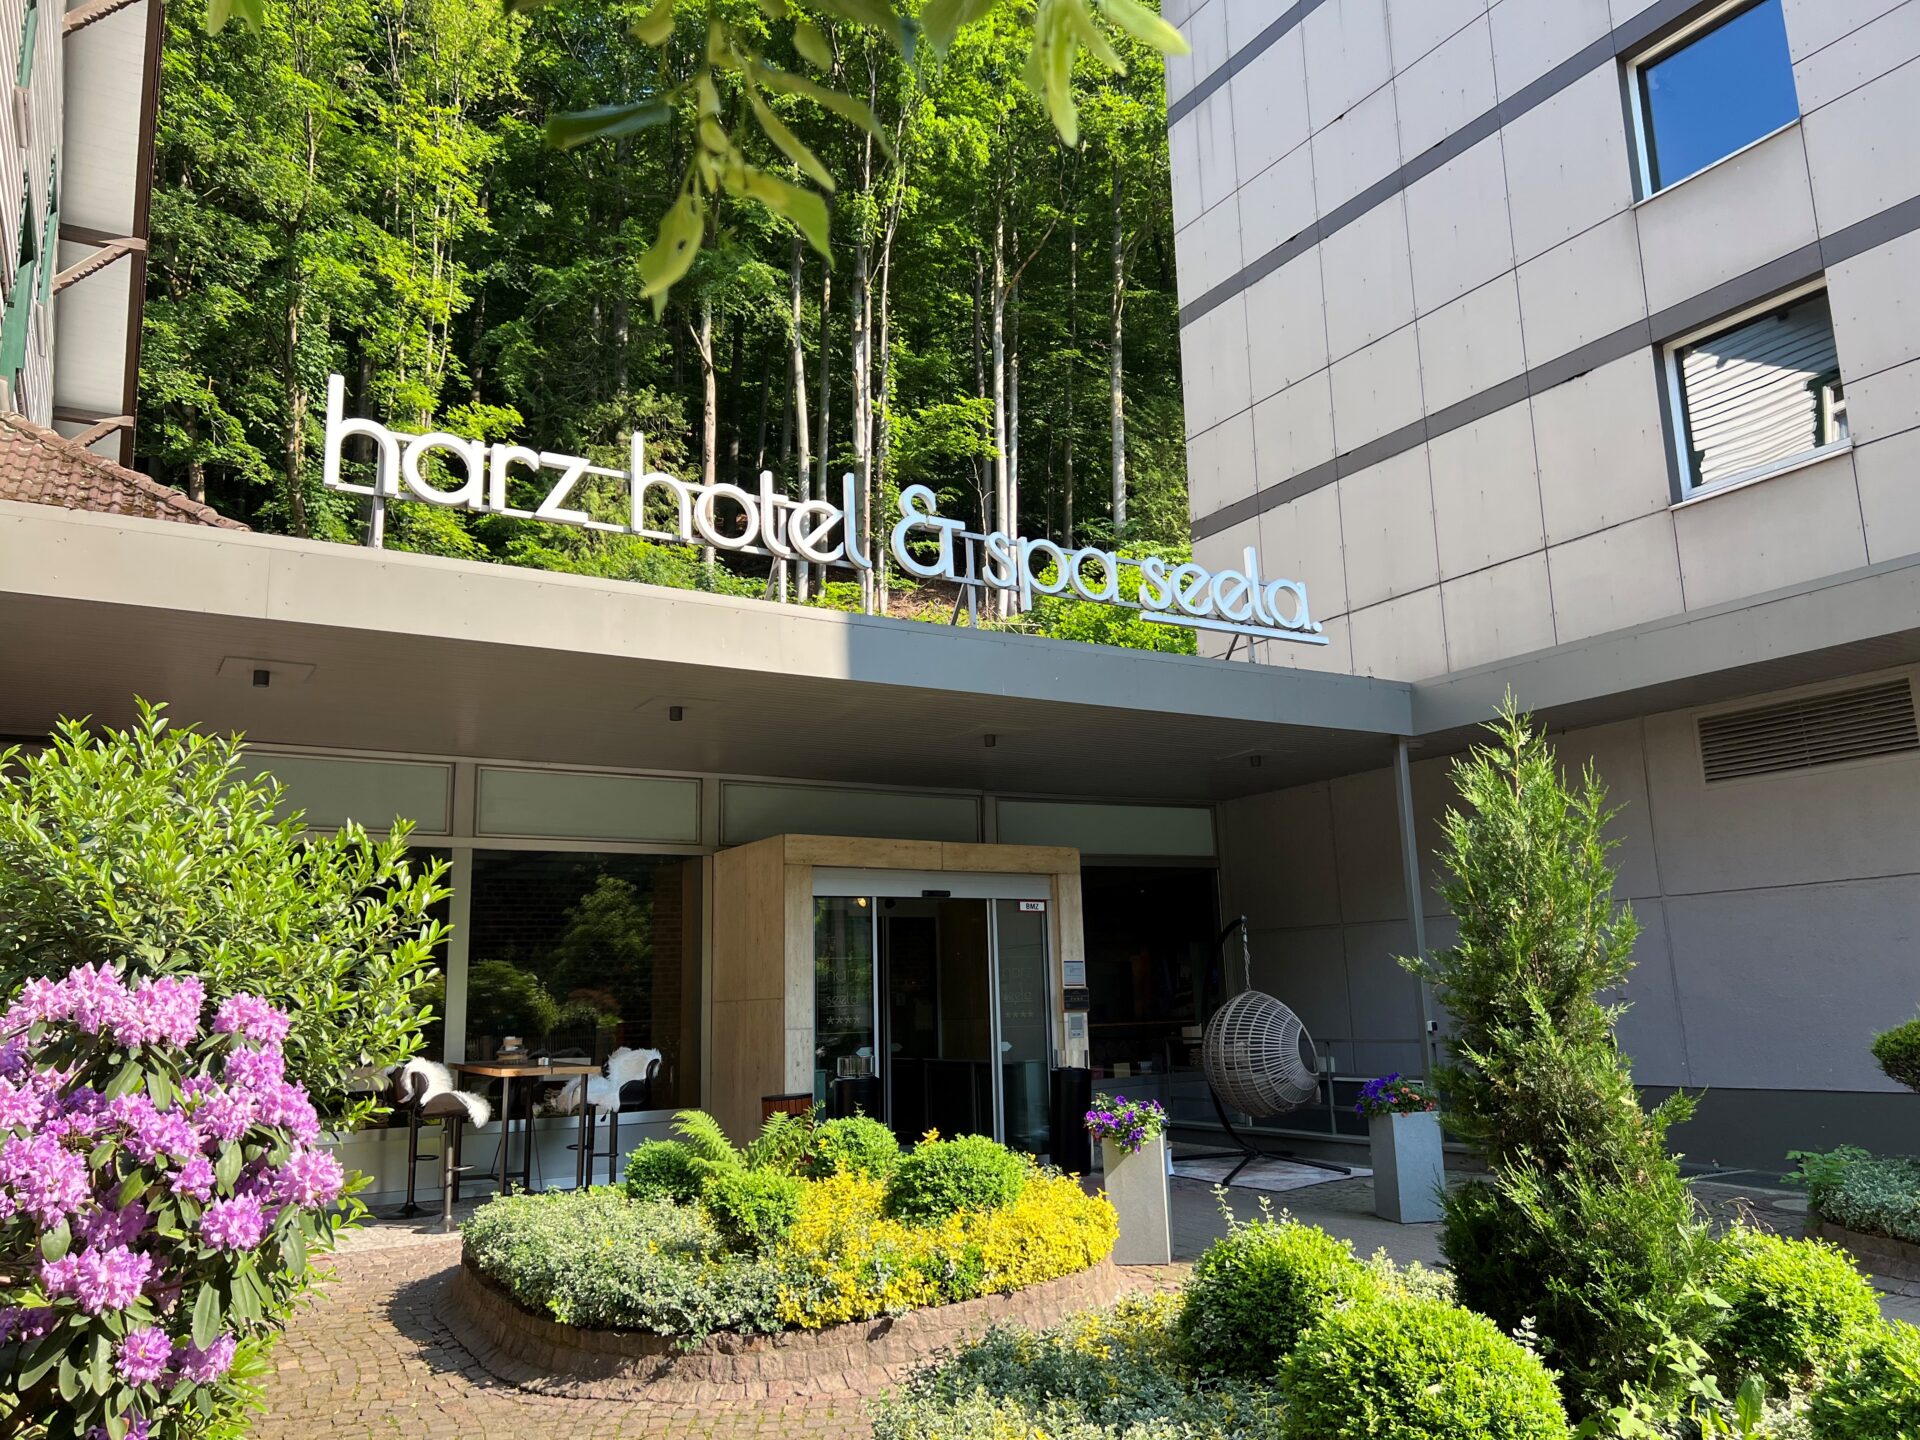 Das Hotel Seela liegt zentral in Bad Harzburg und bietet somit eine ideale Ausgangslage für zahlreiche Aktivitäten und Sehenswürdigkeiten in der Umgebung.